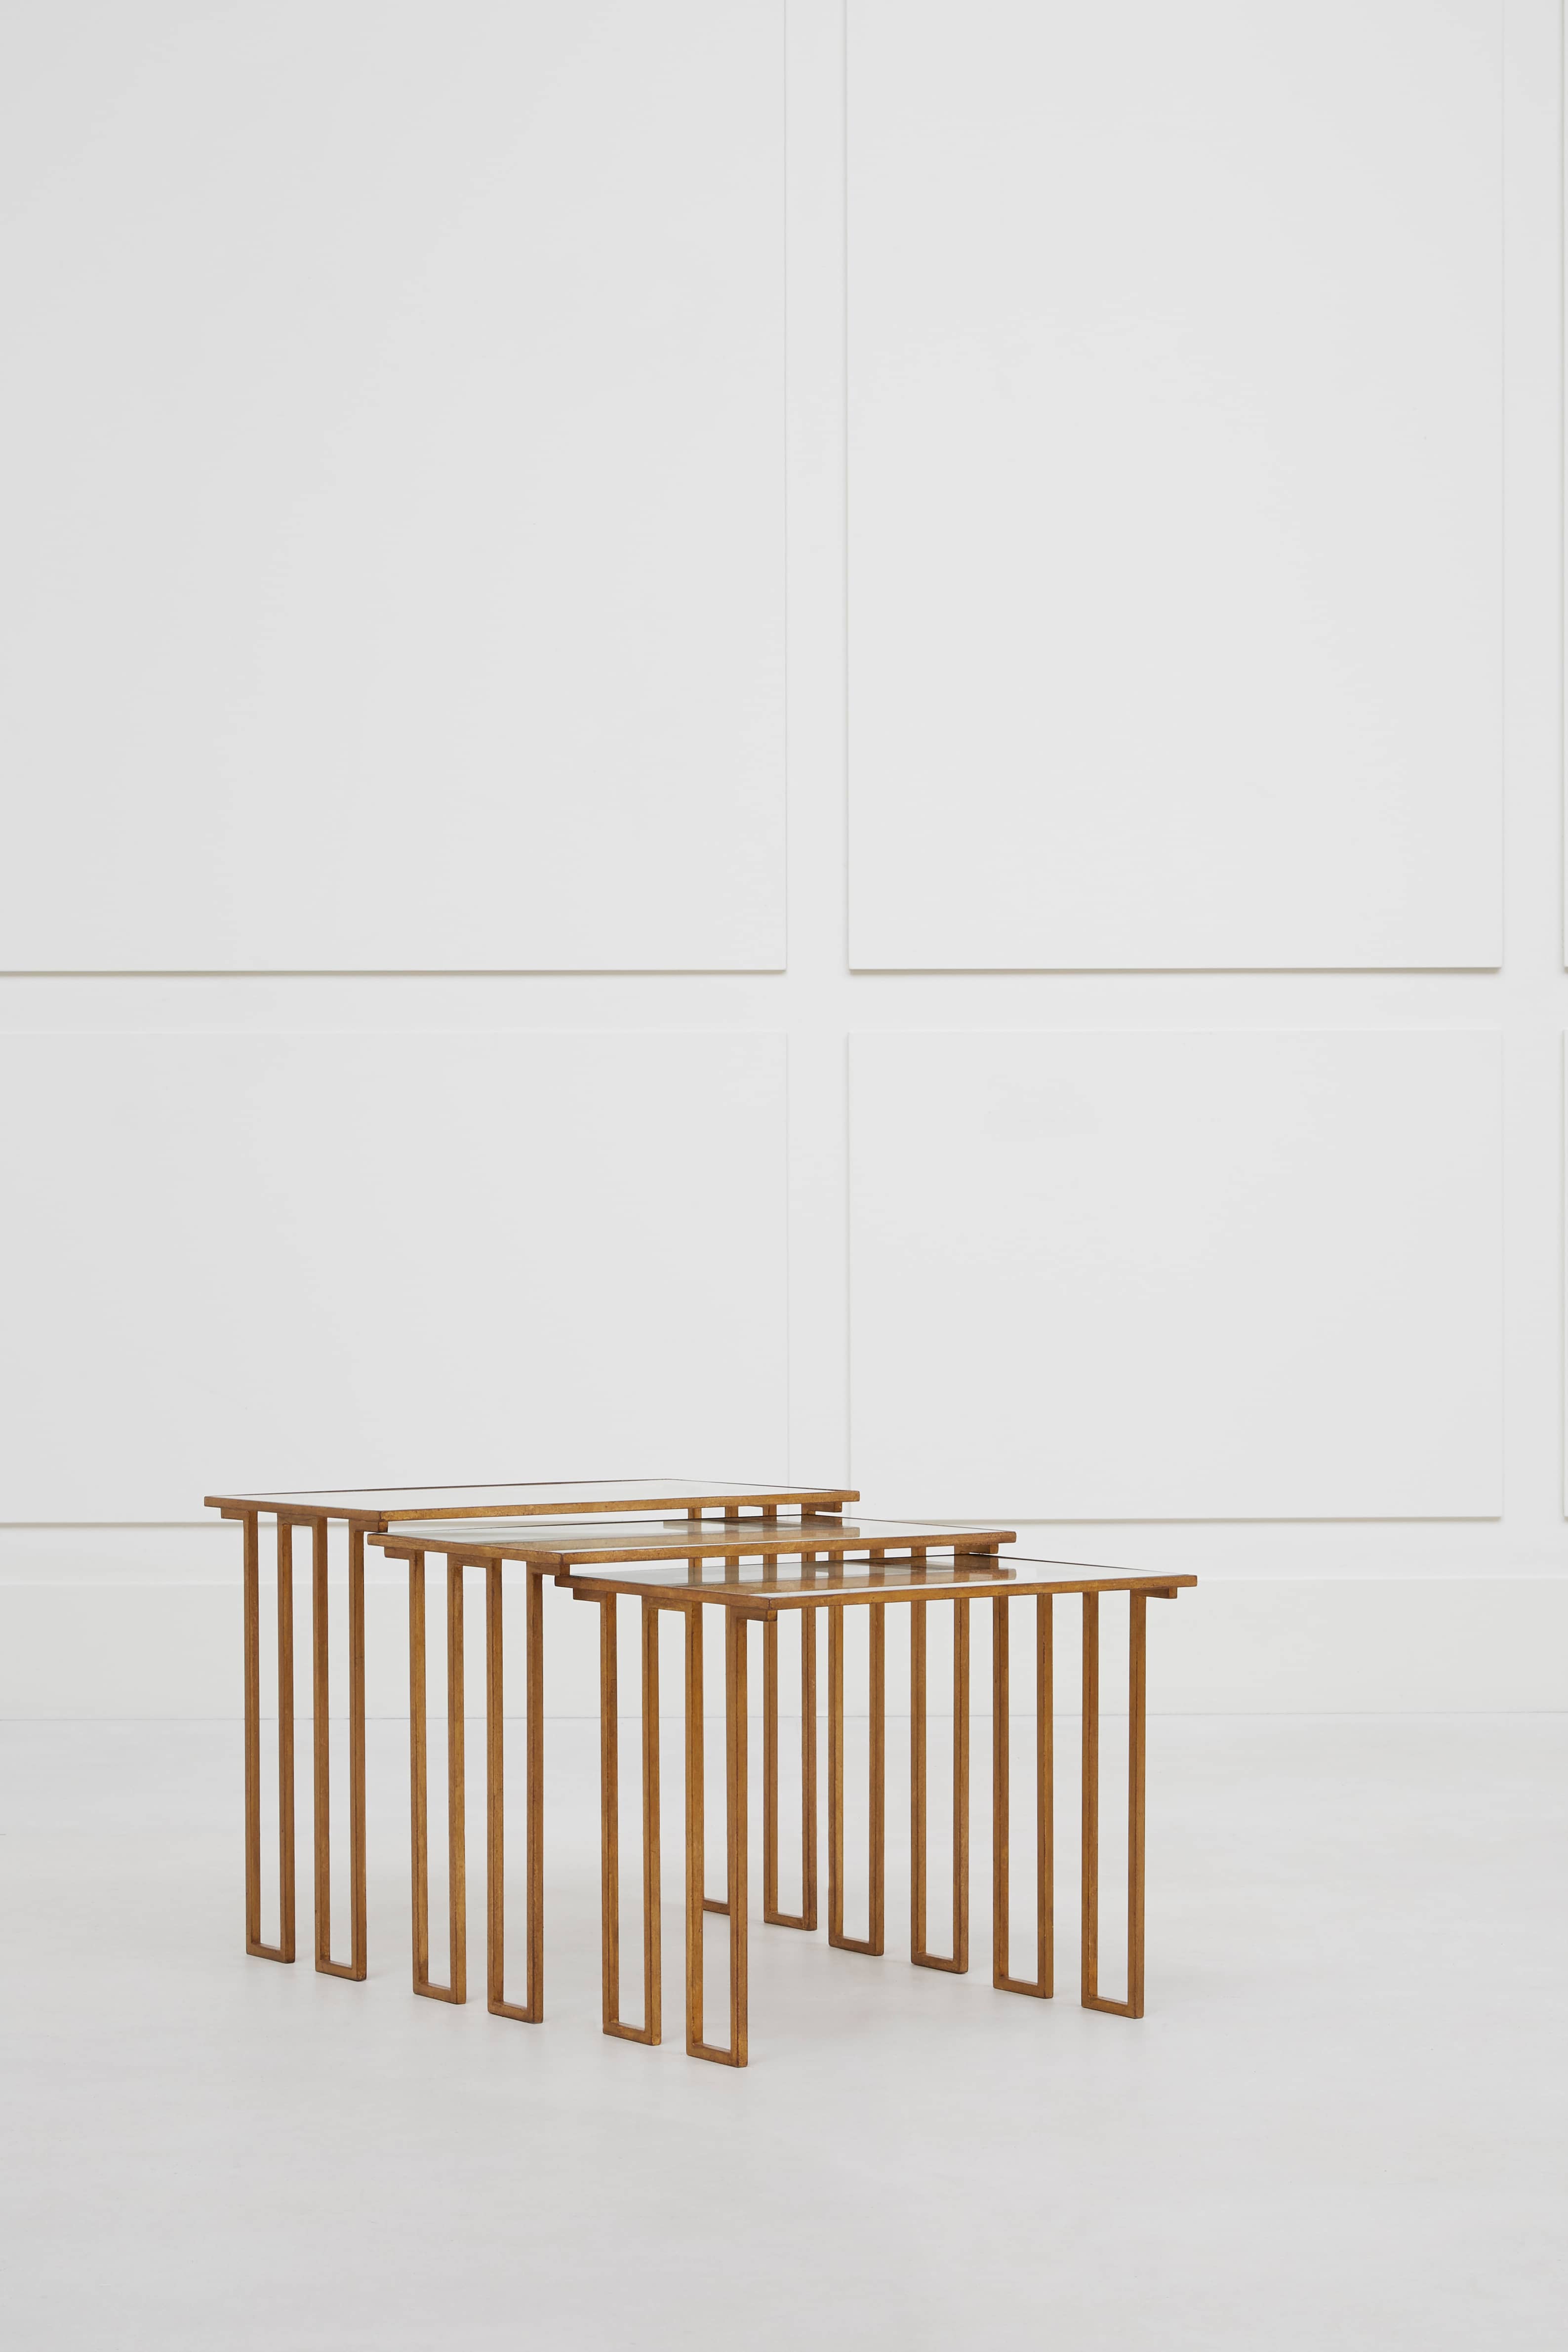 Jean Royère, “Créneaux” nesting tables, vue 01